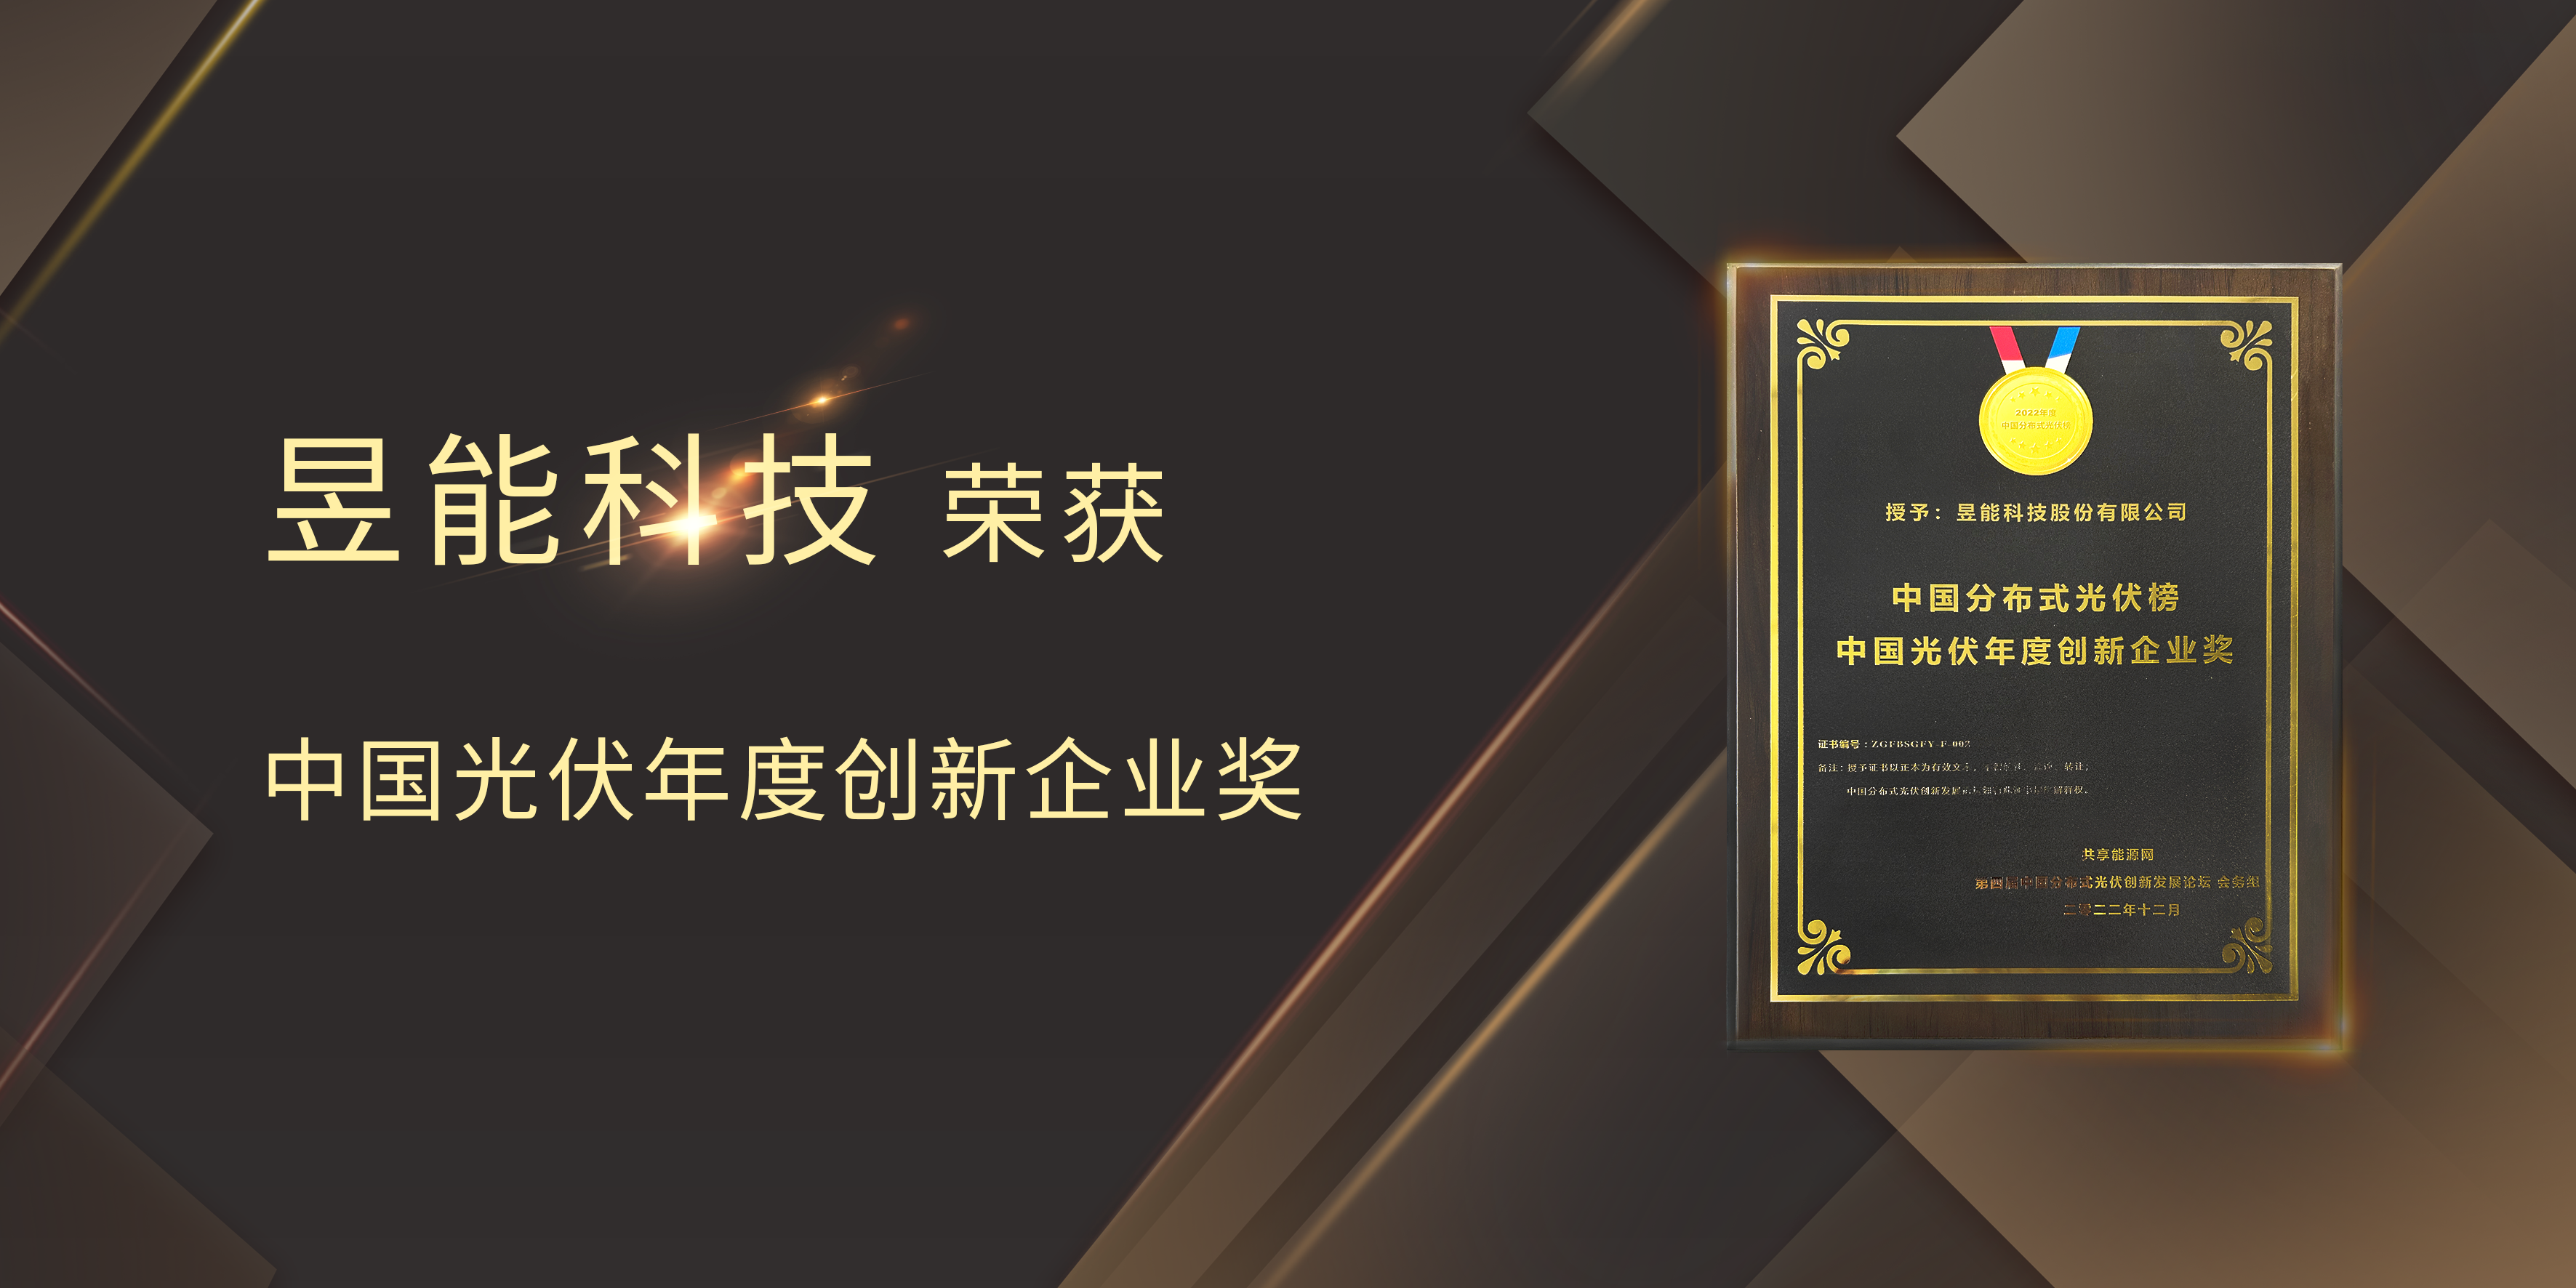 硬核实力备受认可丨昱能科技荣获“中国光伏年度创新企业奖”